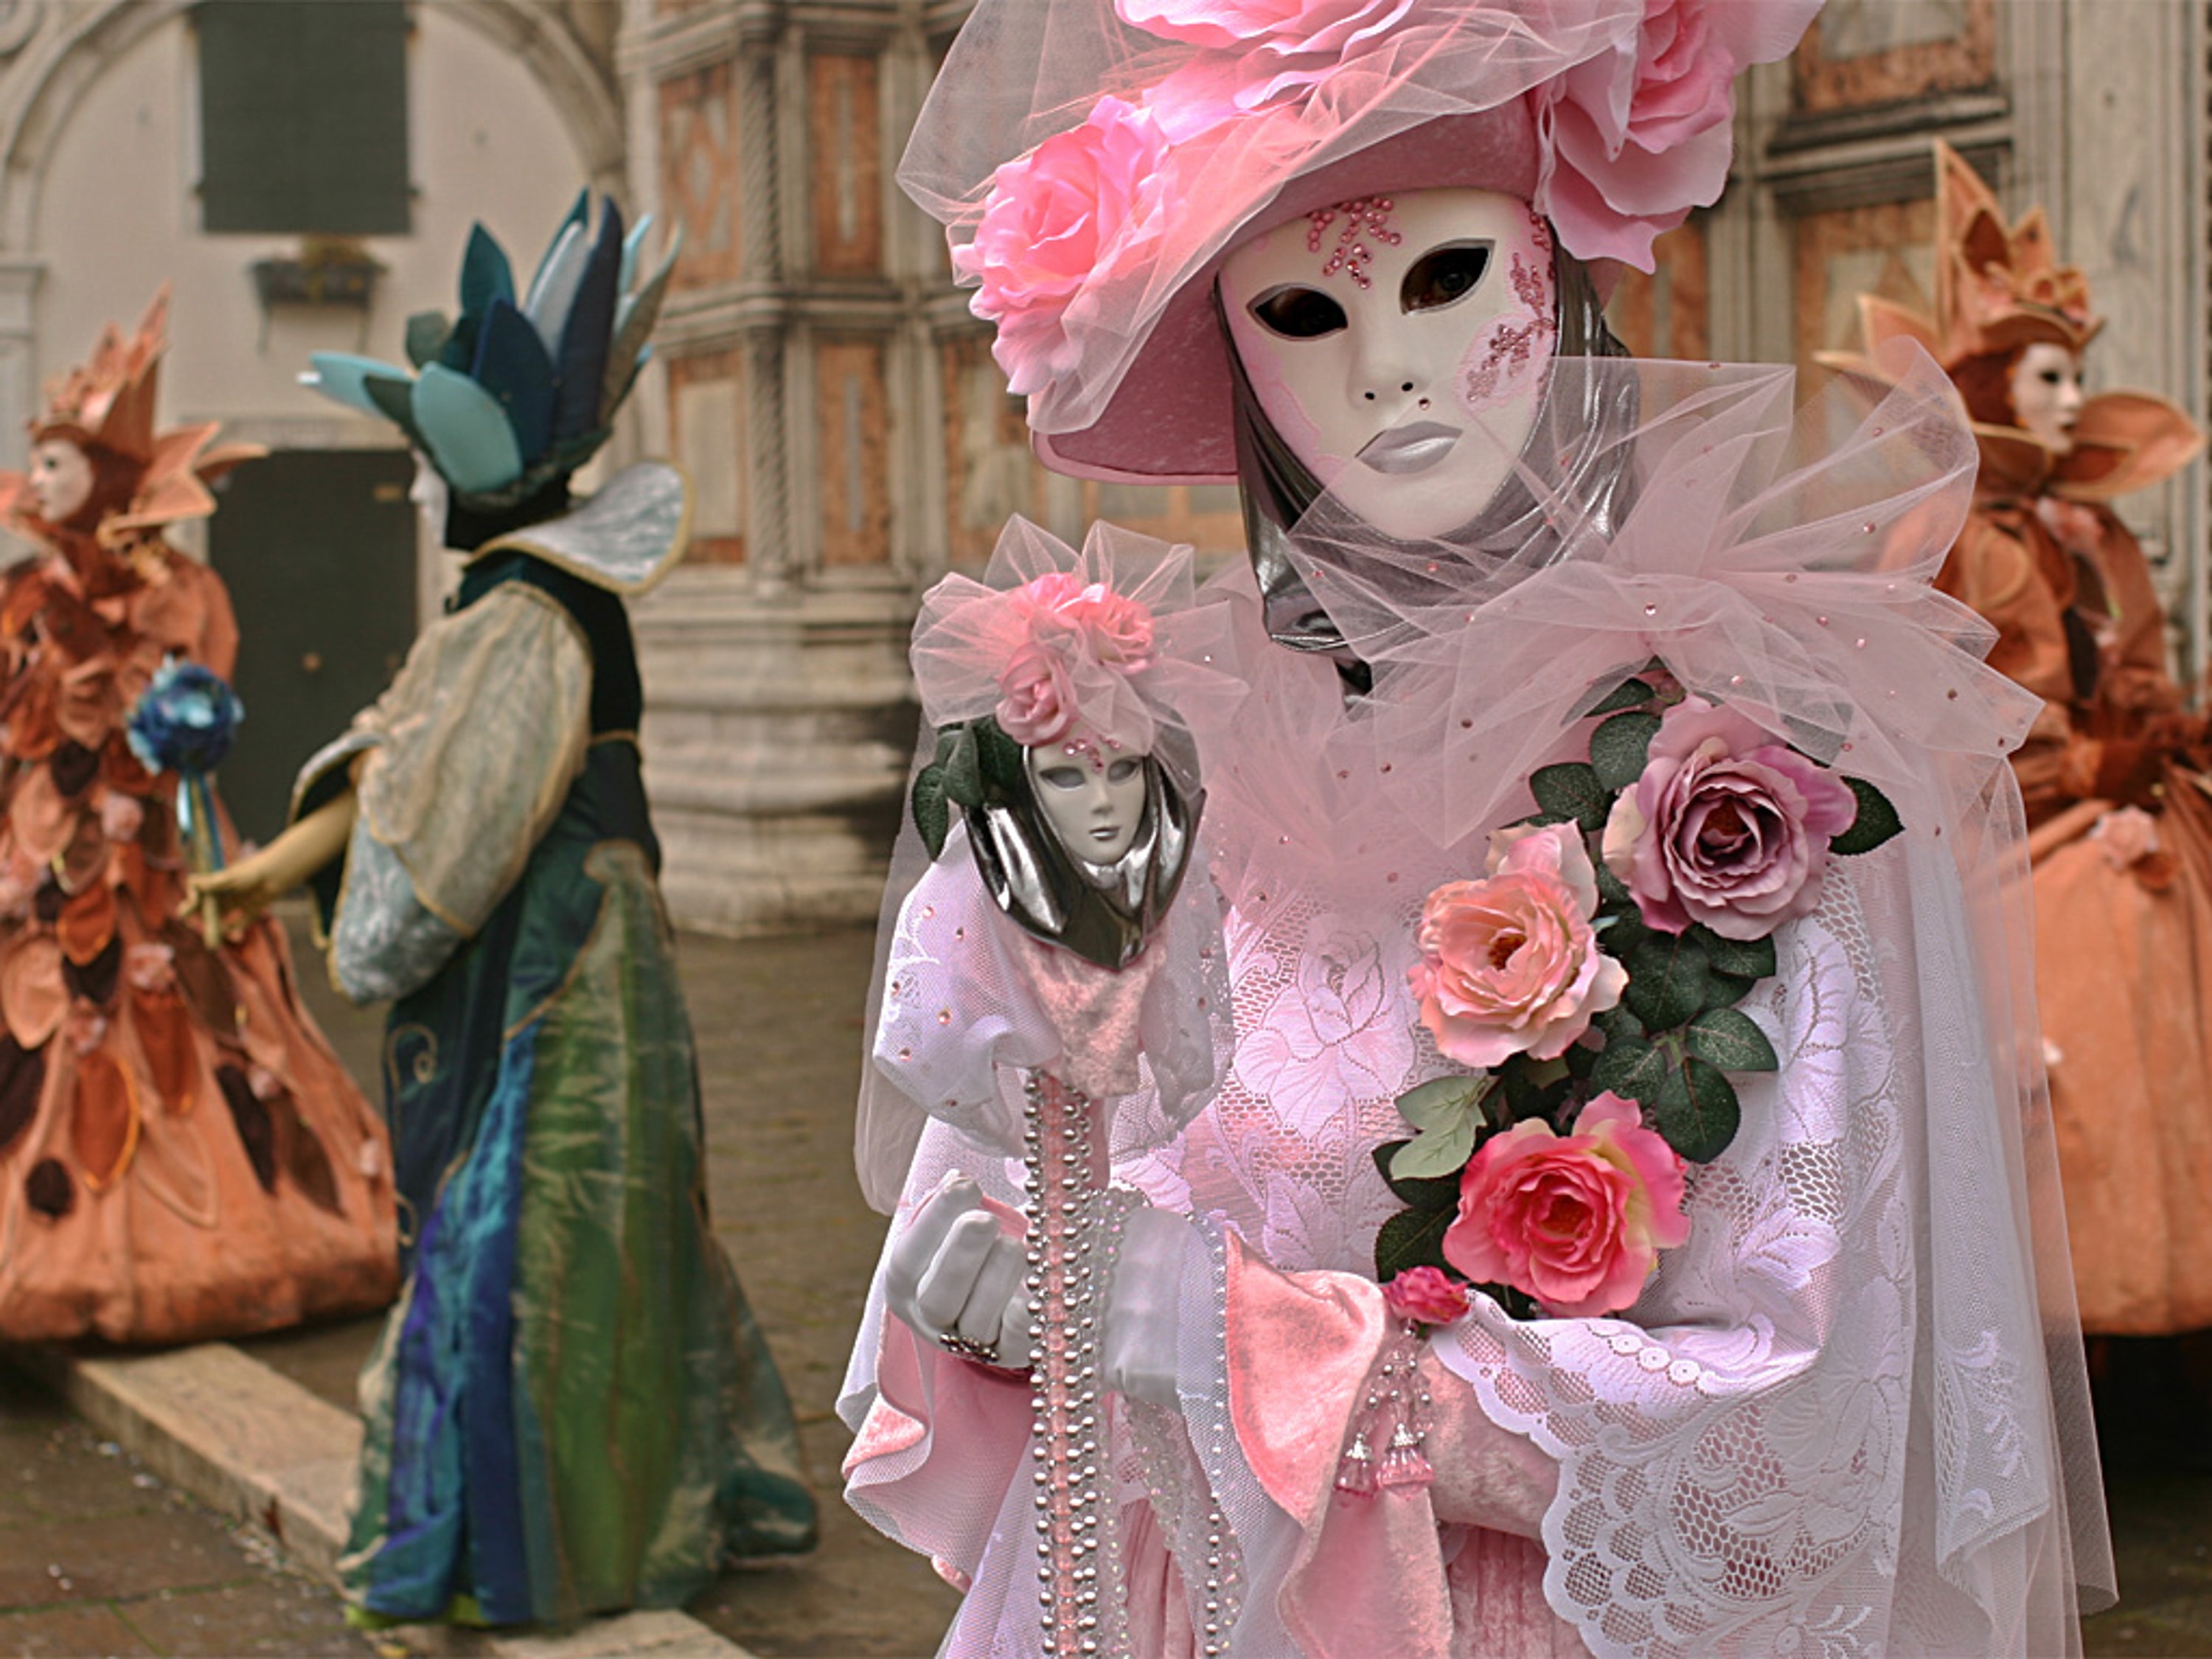 Carnival Venice 